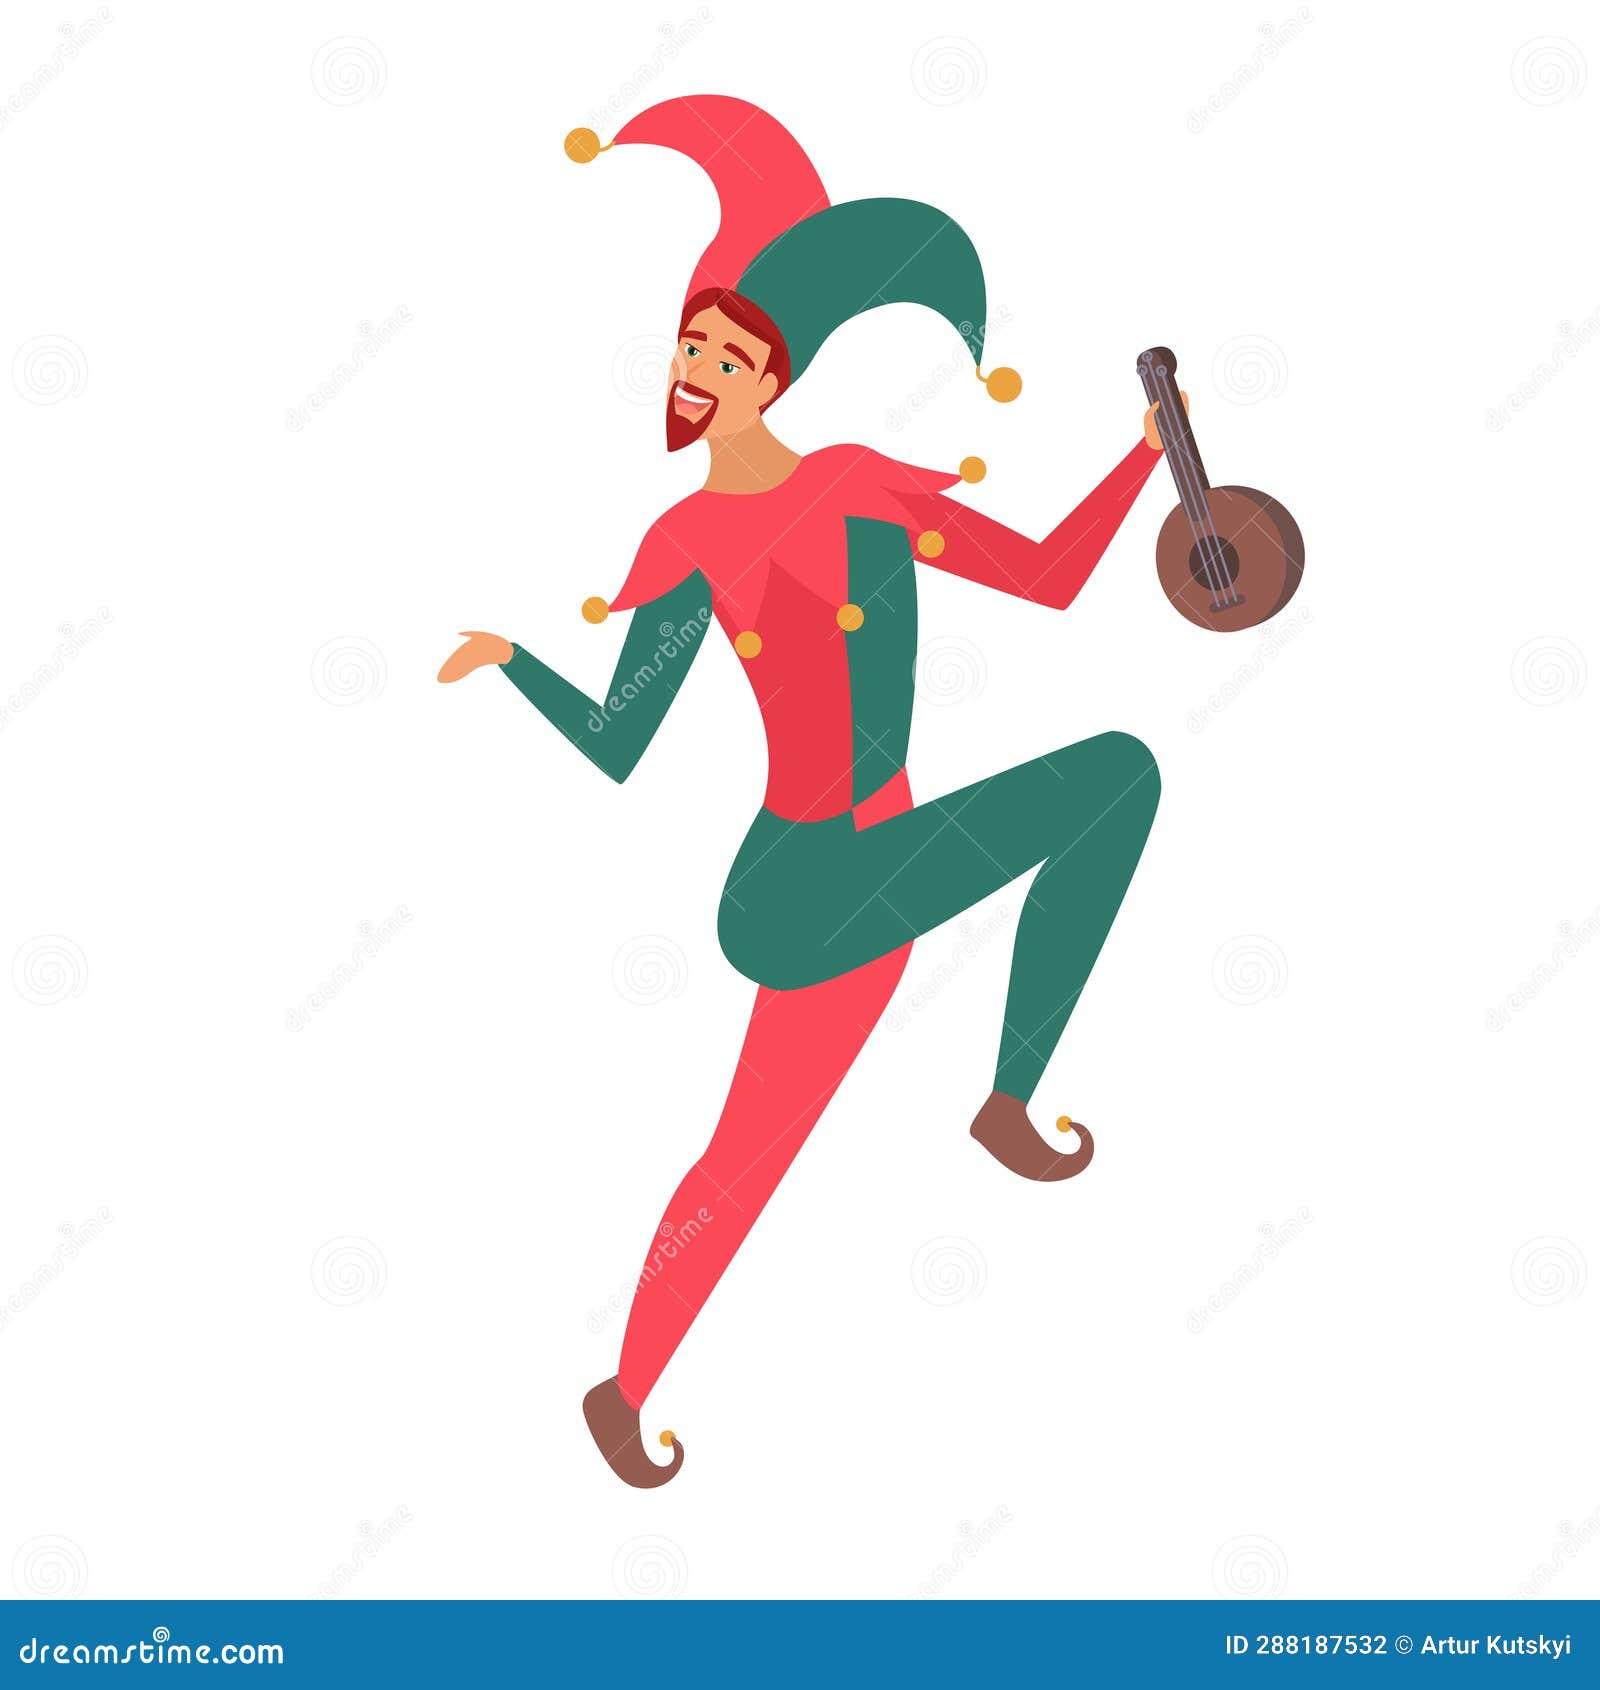 Medieval jester dancing stock illustration. Illustration of harlequin ...